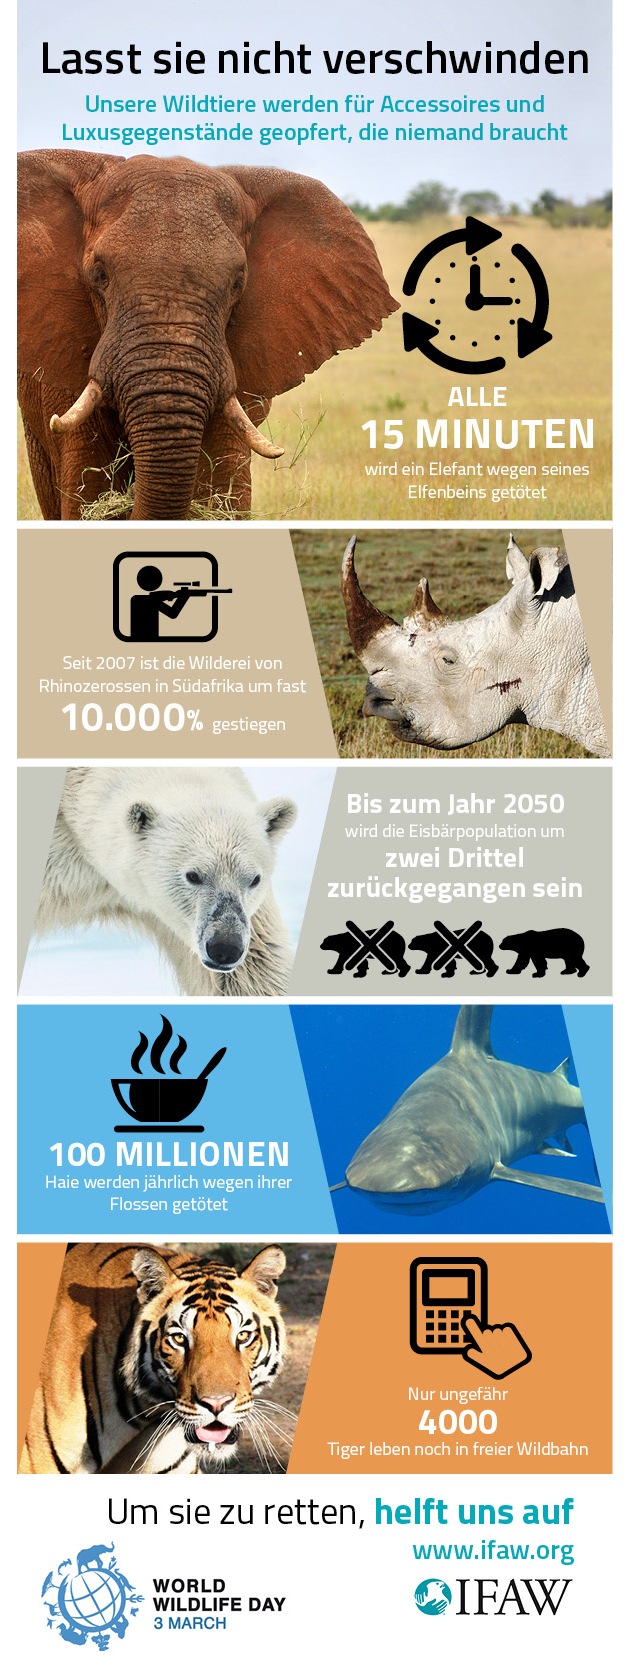 Unsere Artenvielfalt schmilzt dahin - IFAW-Aktion zum Welt Wildtier Tag 2015